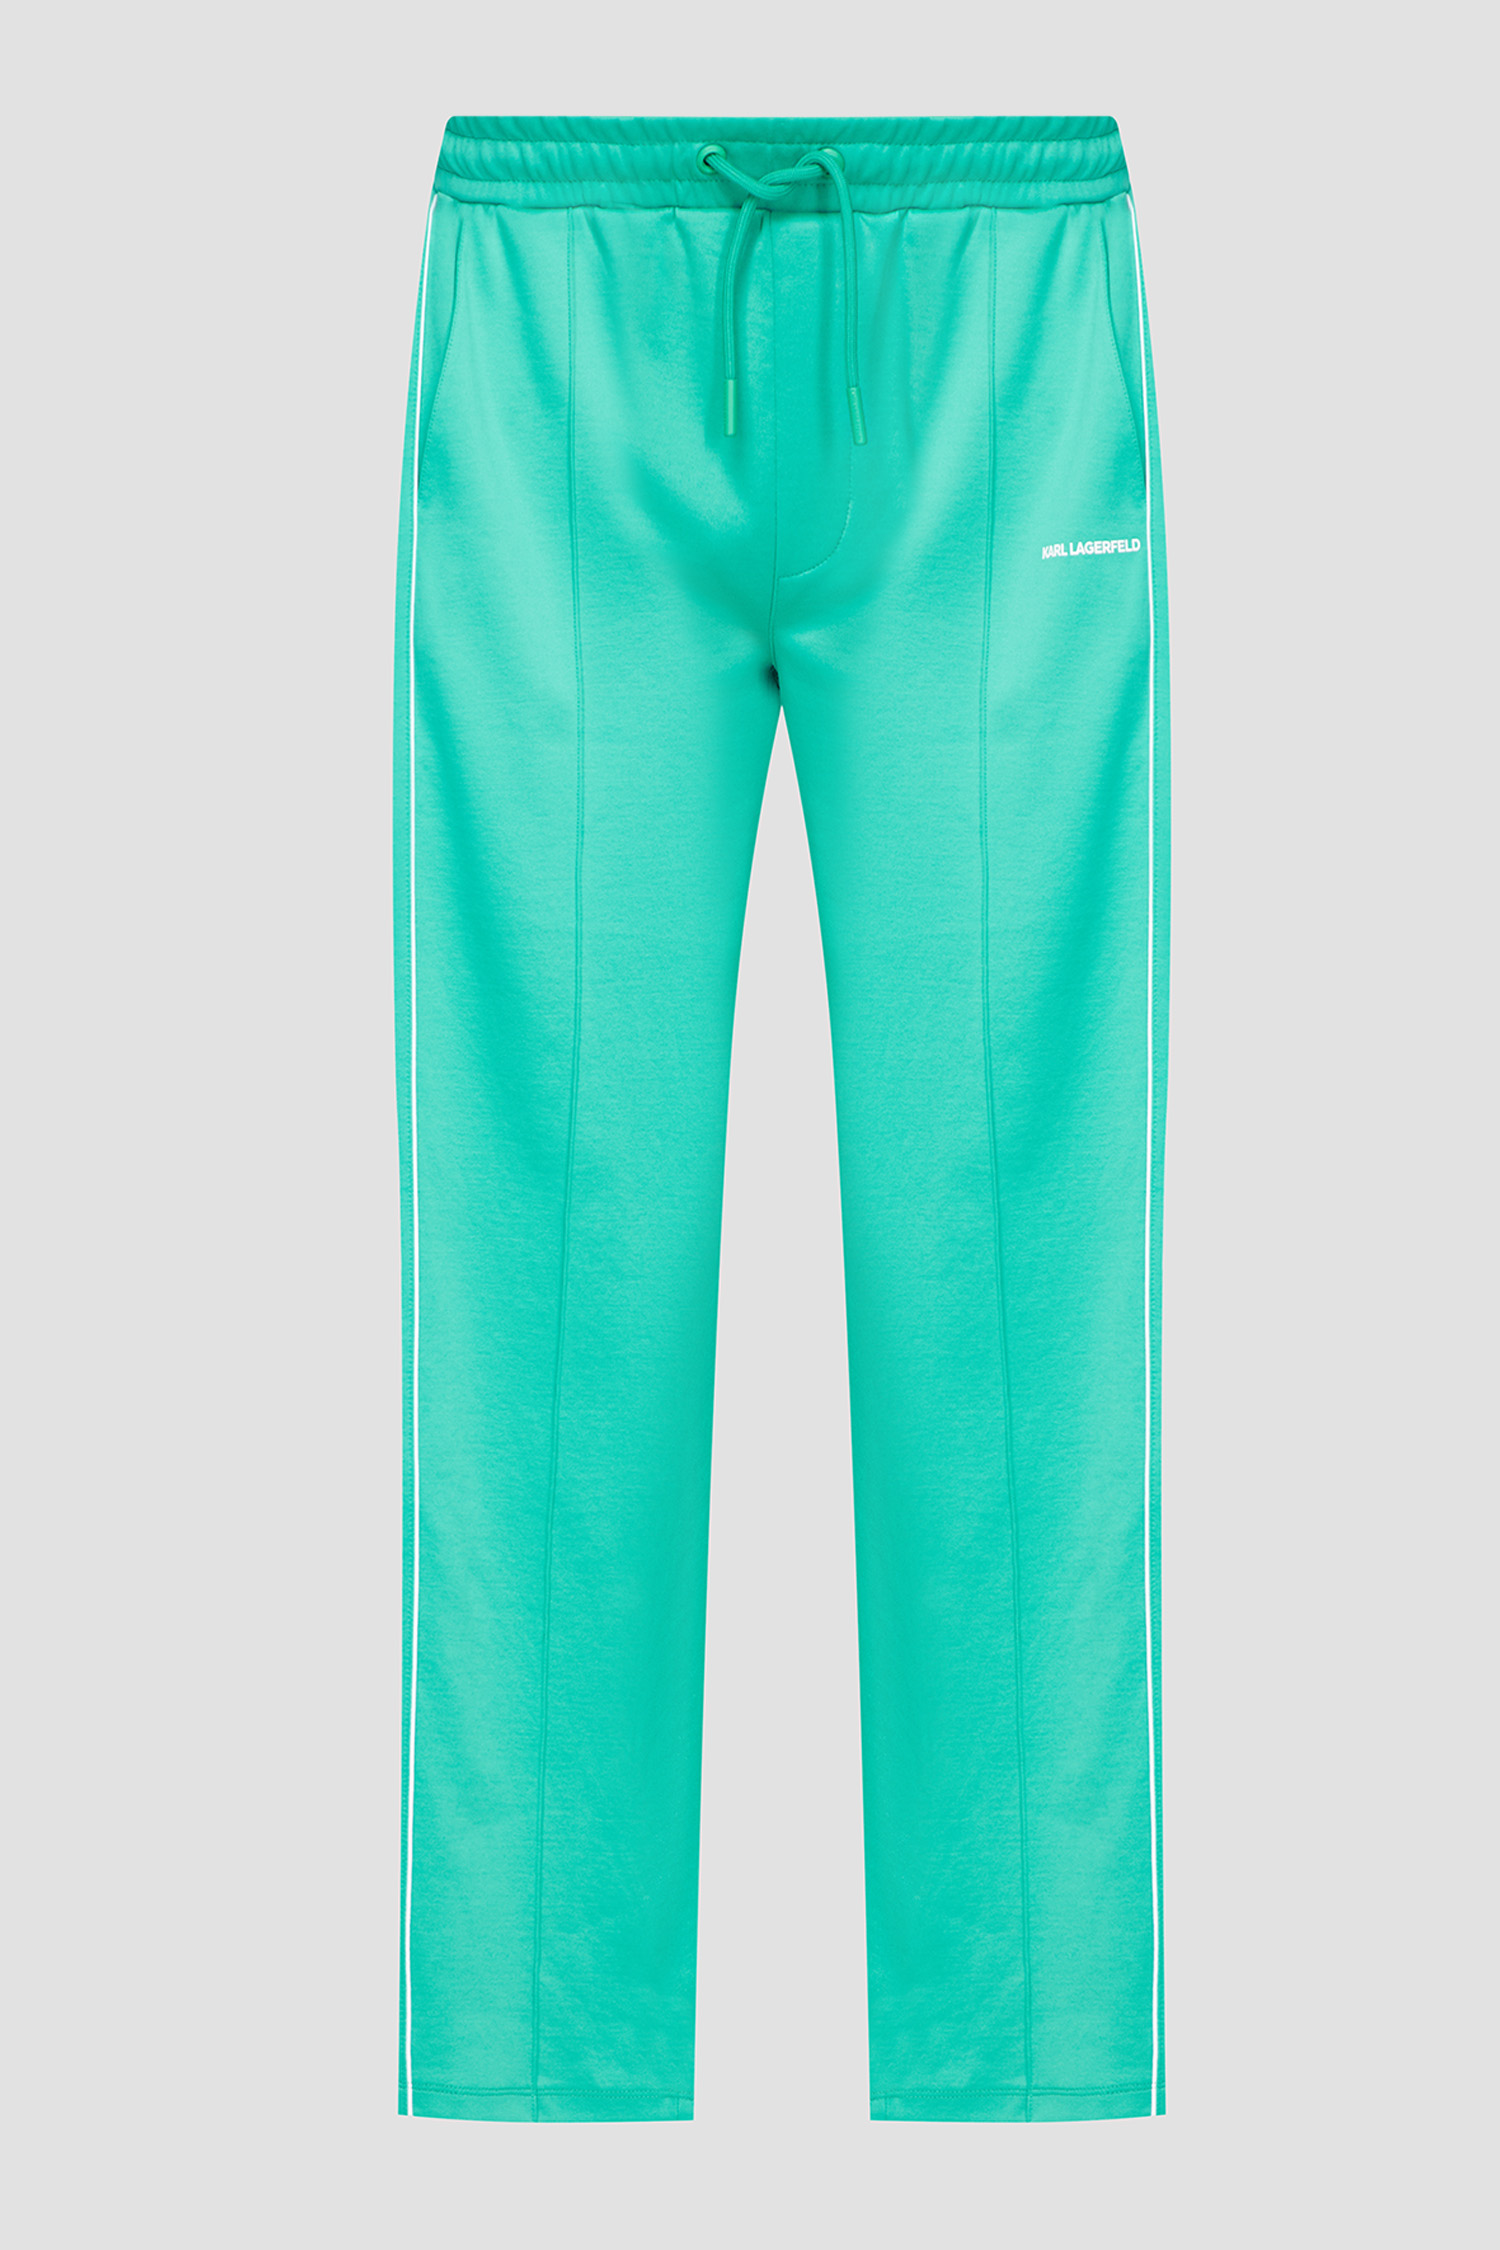 Мужские зеленые спортивные брюки Karl Lagerfeld 532905.705020;530